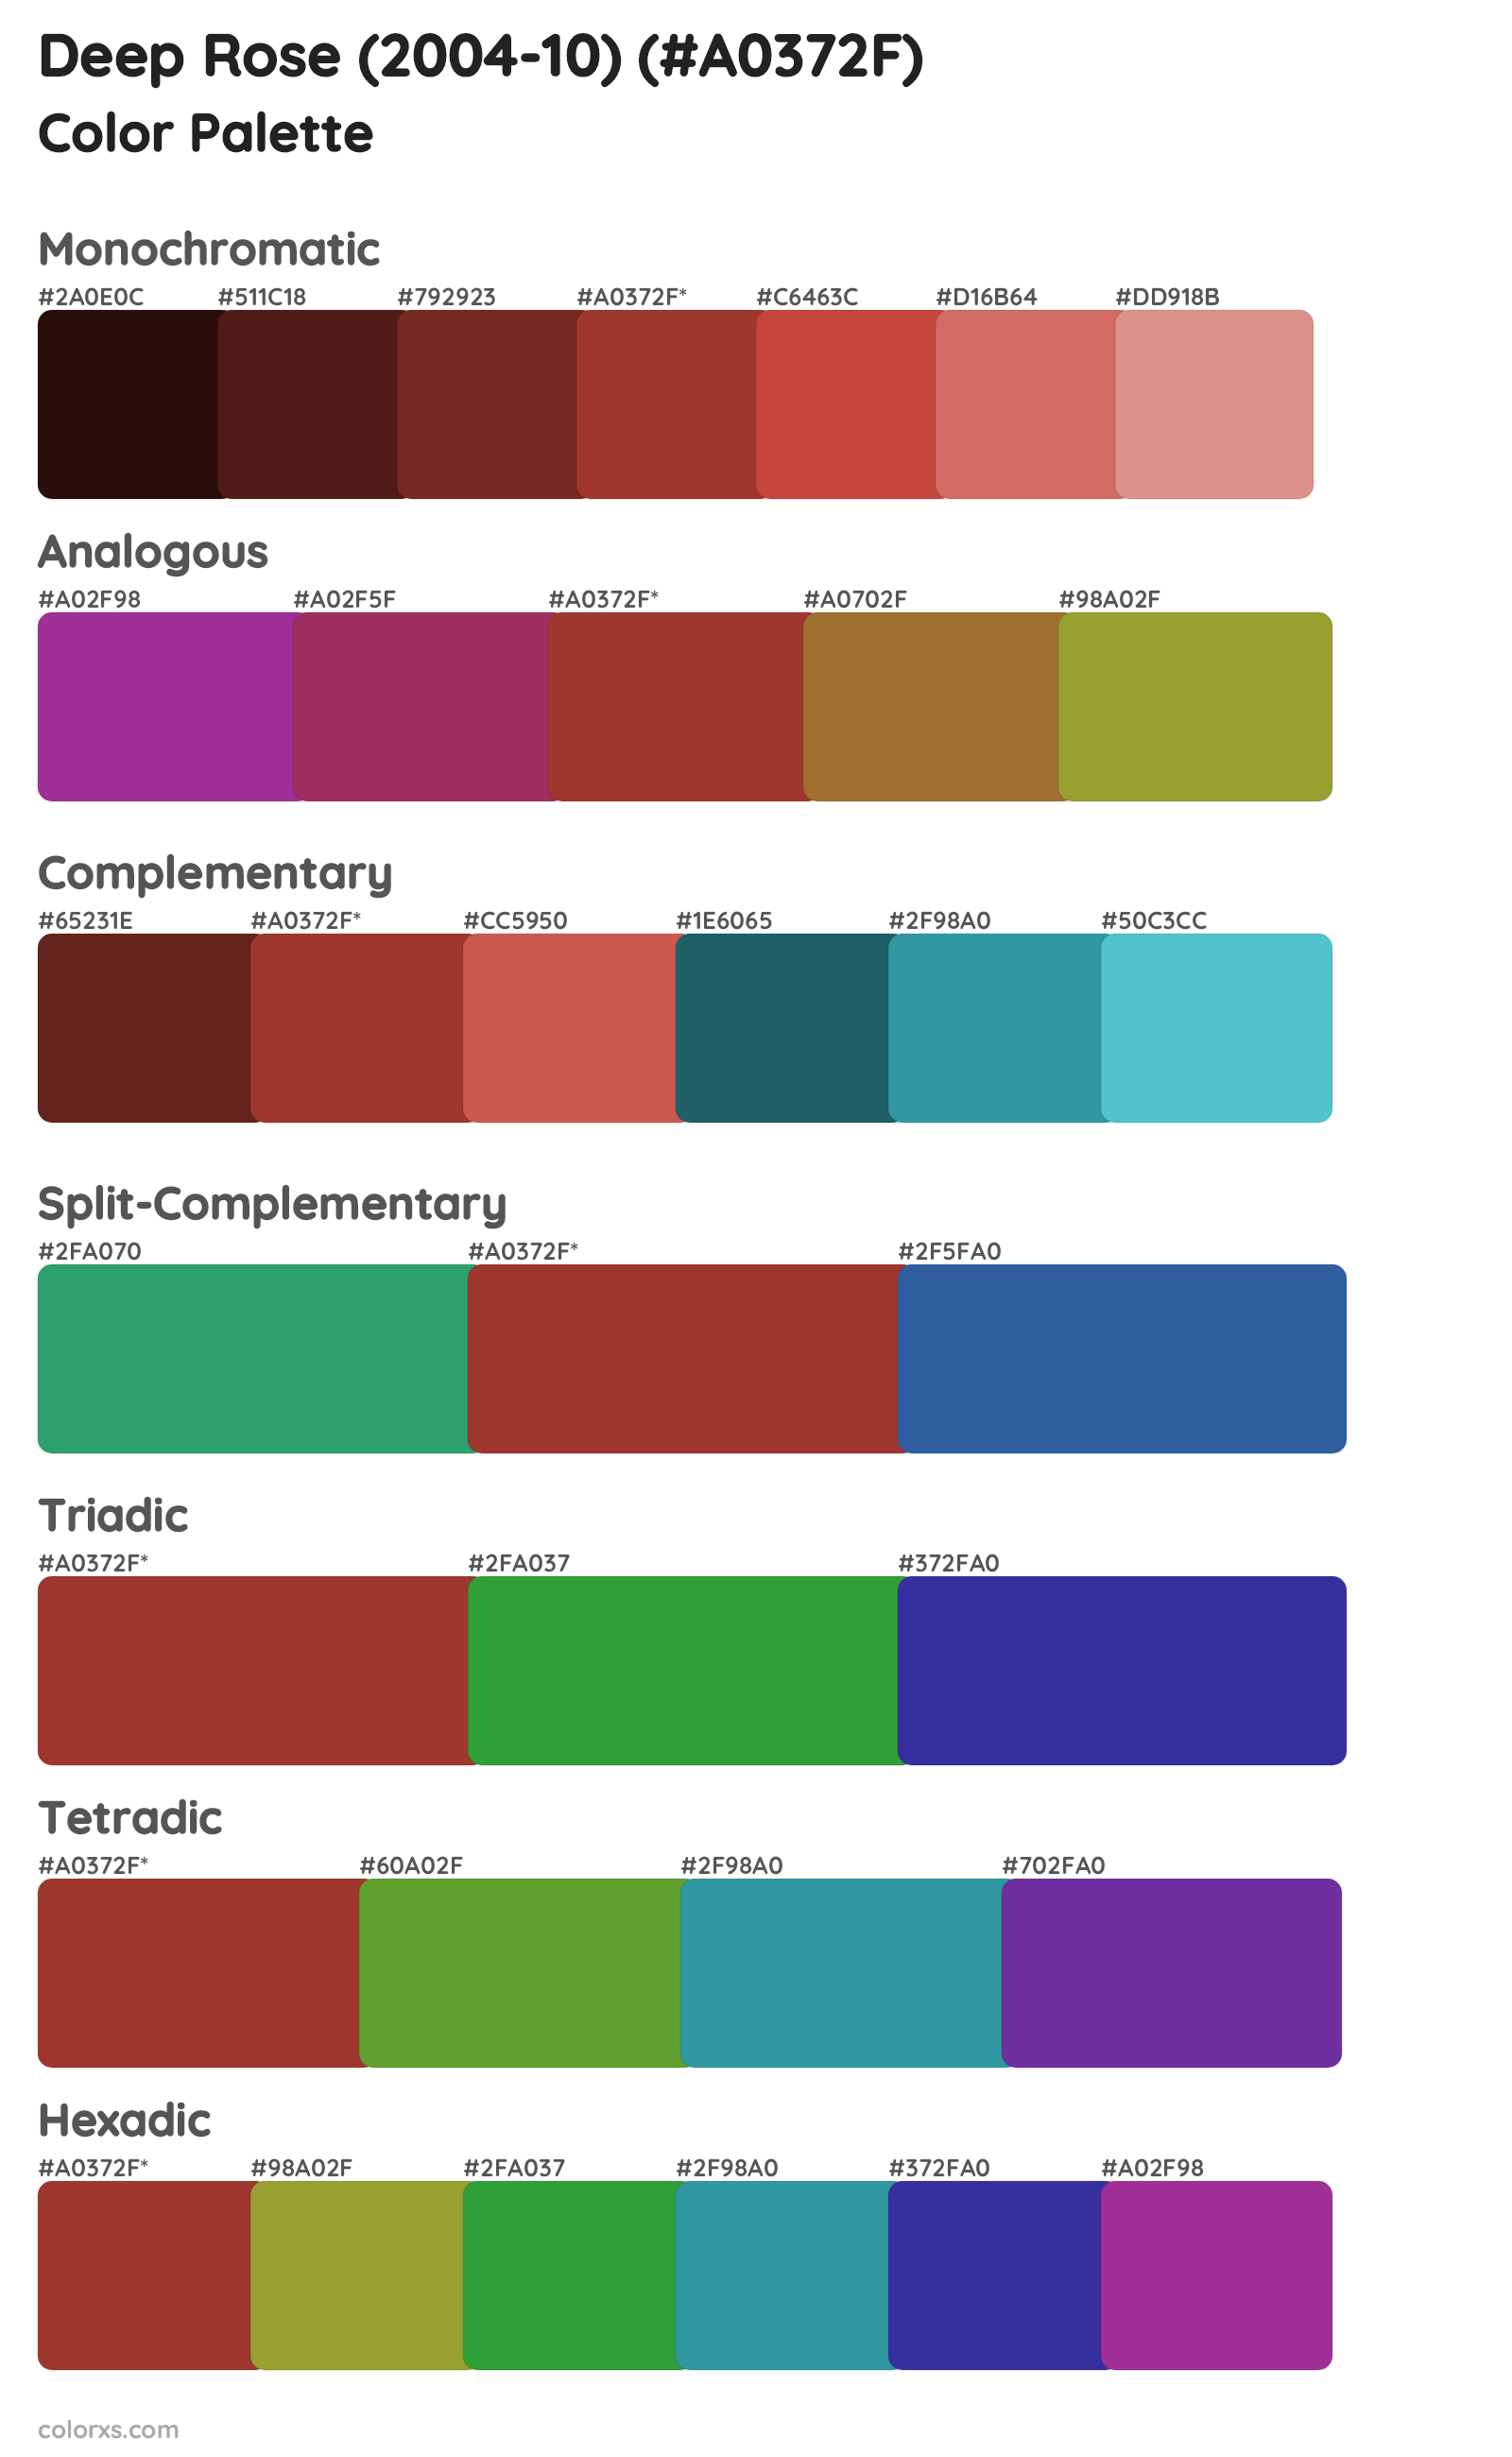 Deep Rose (2004-10) Color Scheme Palettes